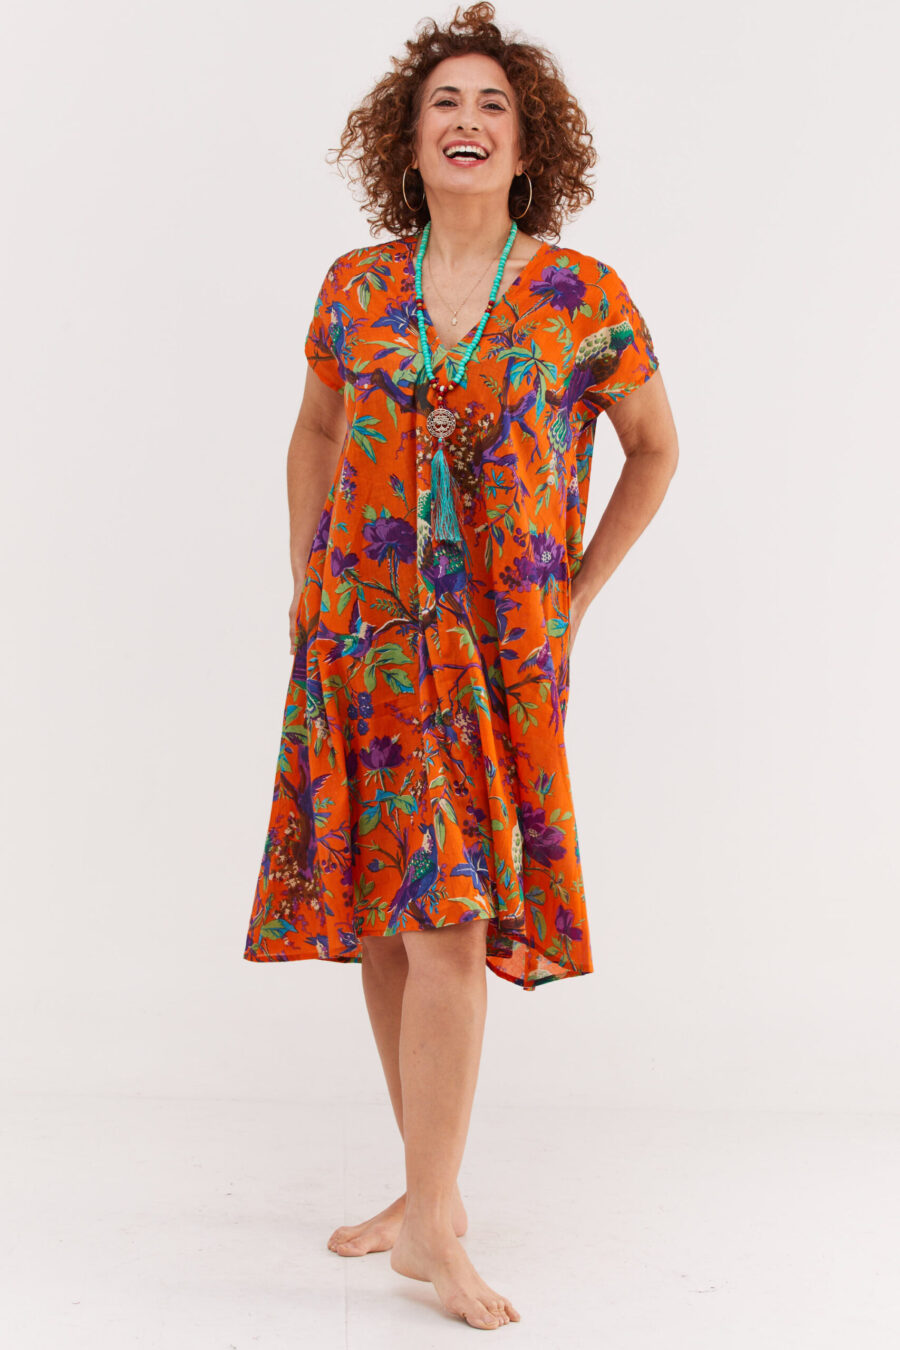 שמלת ג'וז | שמלת אוברסייז באורך מידי בעיצוב ייחודי - טרופיקנה כתום, הדפס טרופי צבעוני על רקע כתום